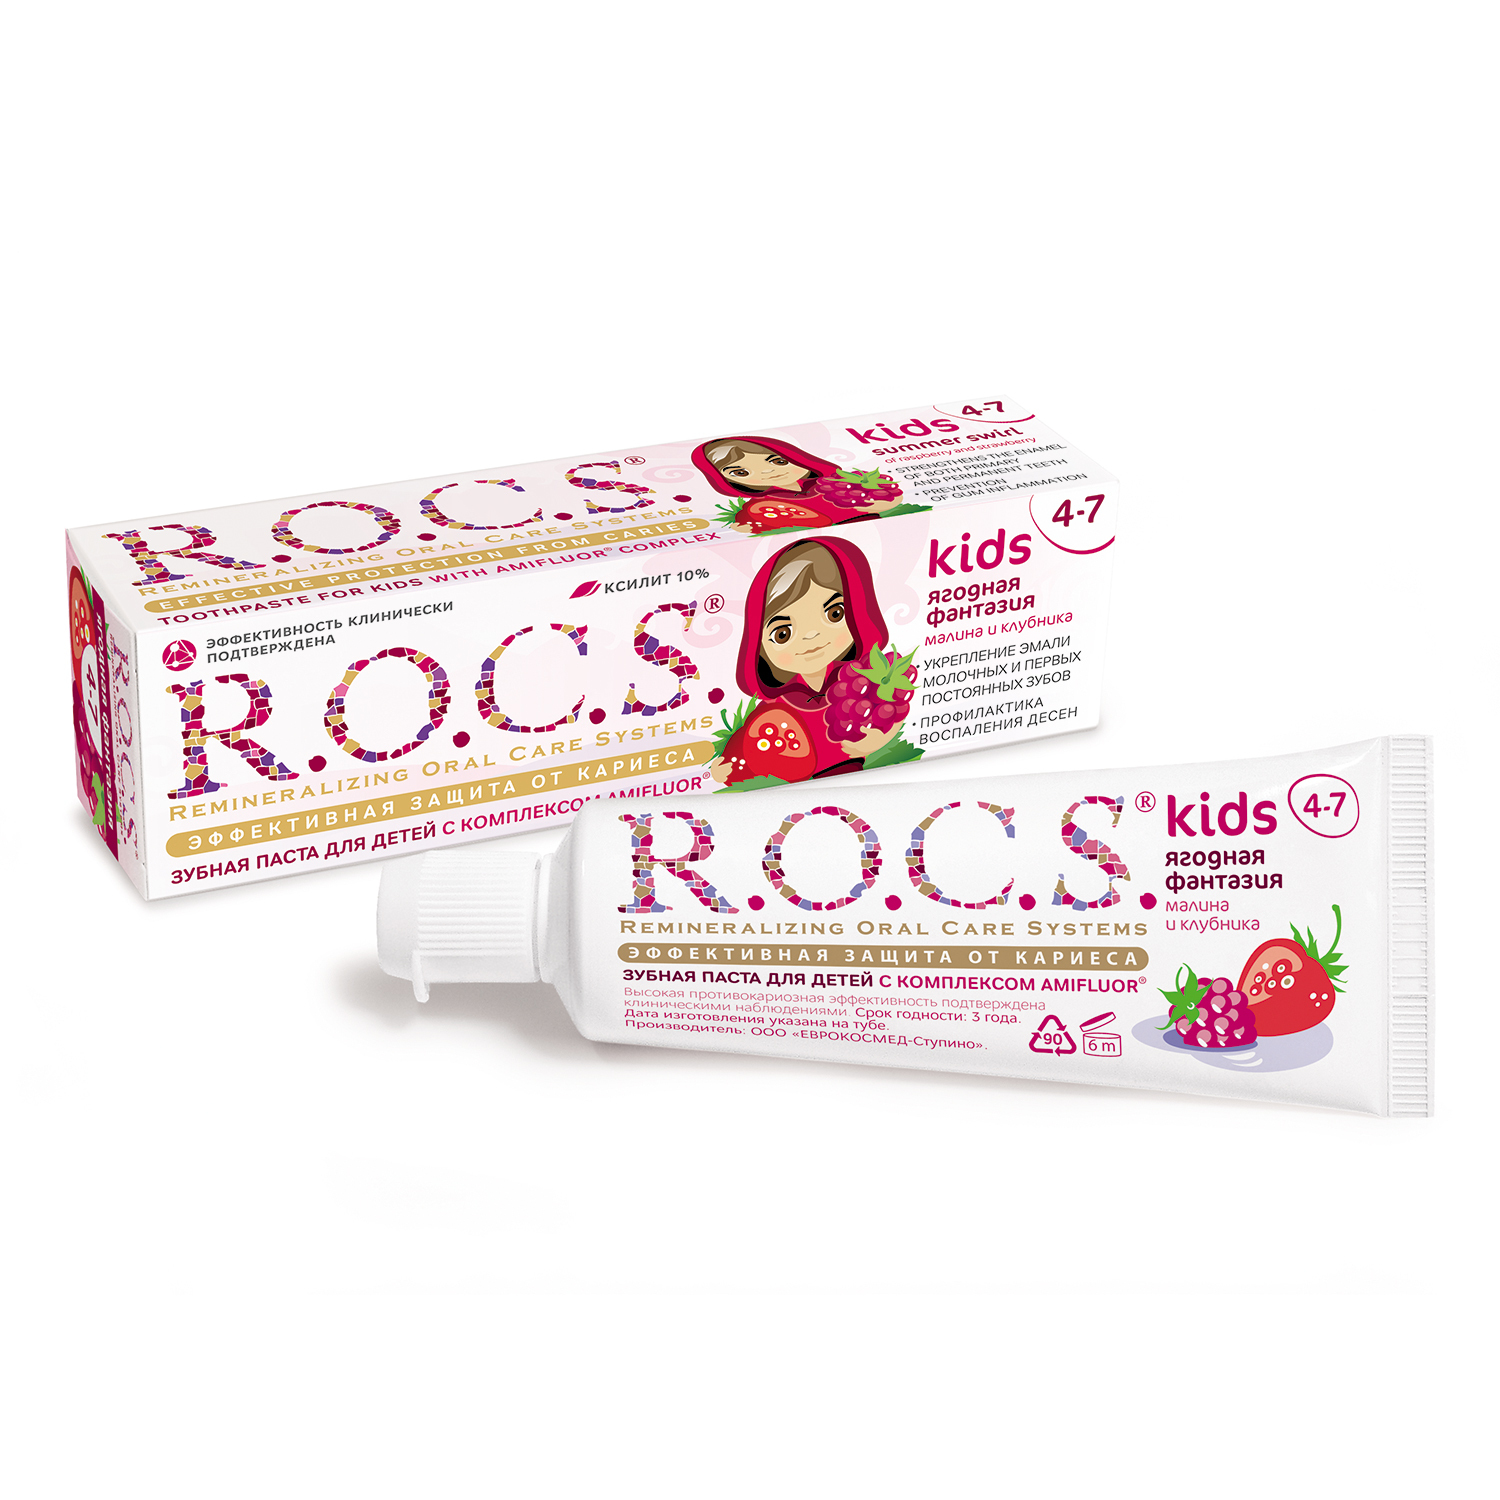 Зубная паста R.O.C.S. Kids Ягодная фантазия со вкусом малины и клубники - фото 9